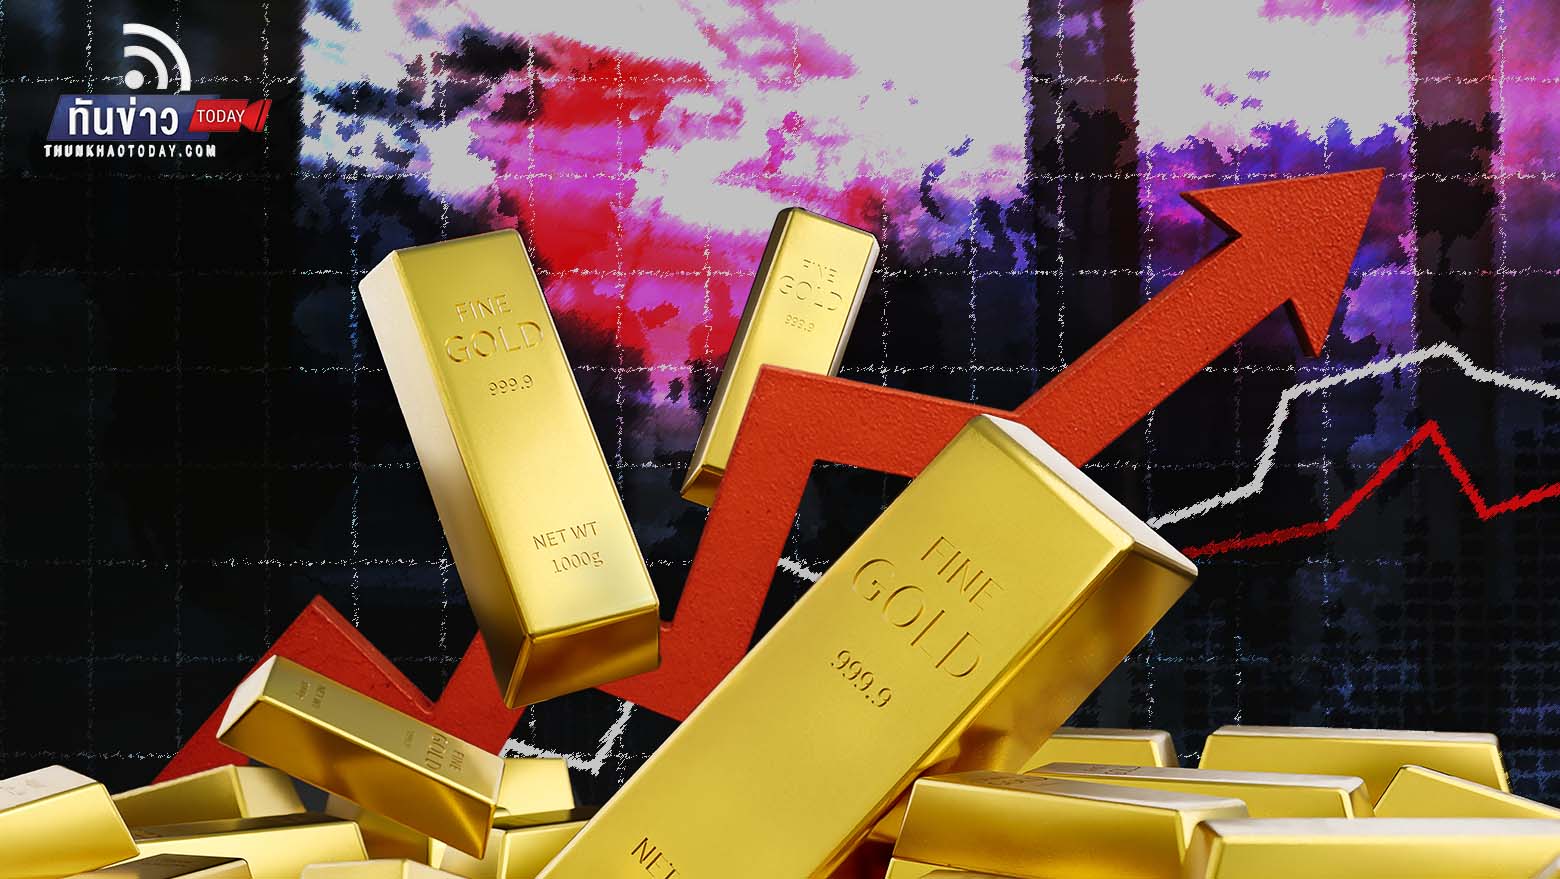 สวิส เอเชีย คาดทองคำอาจพุ่งสูงถึง 4,000 ดอลลาร์ในปีหน้า จากความวิตกเศรษฐกิจถดถอย